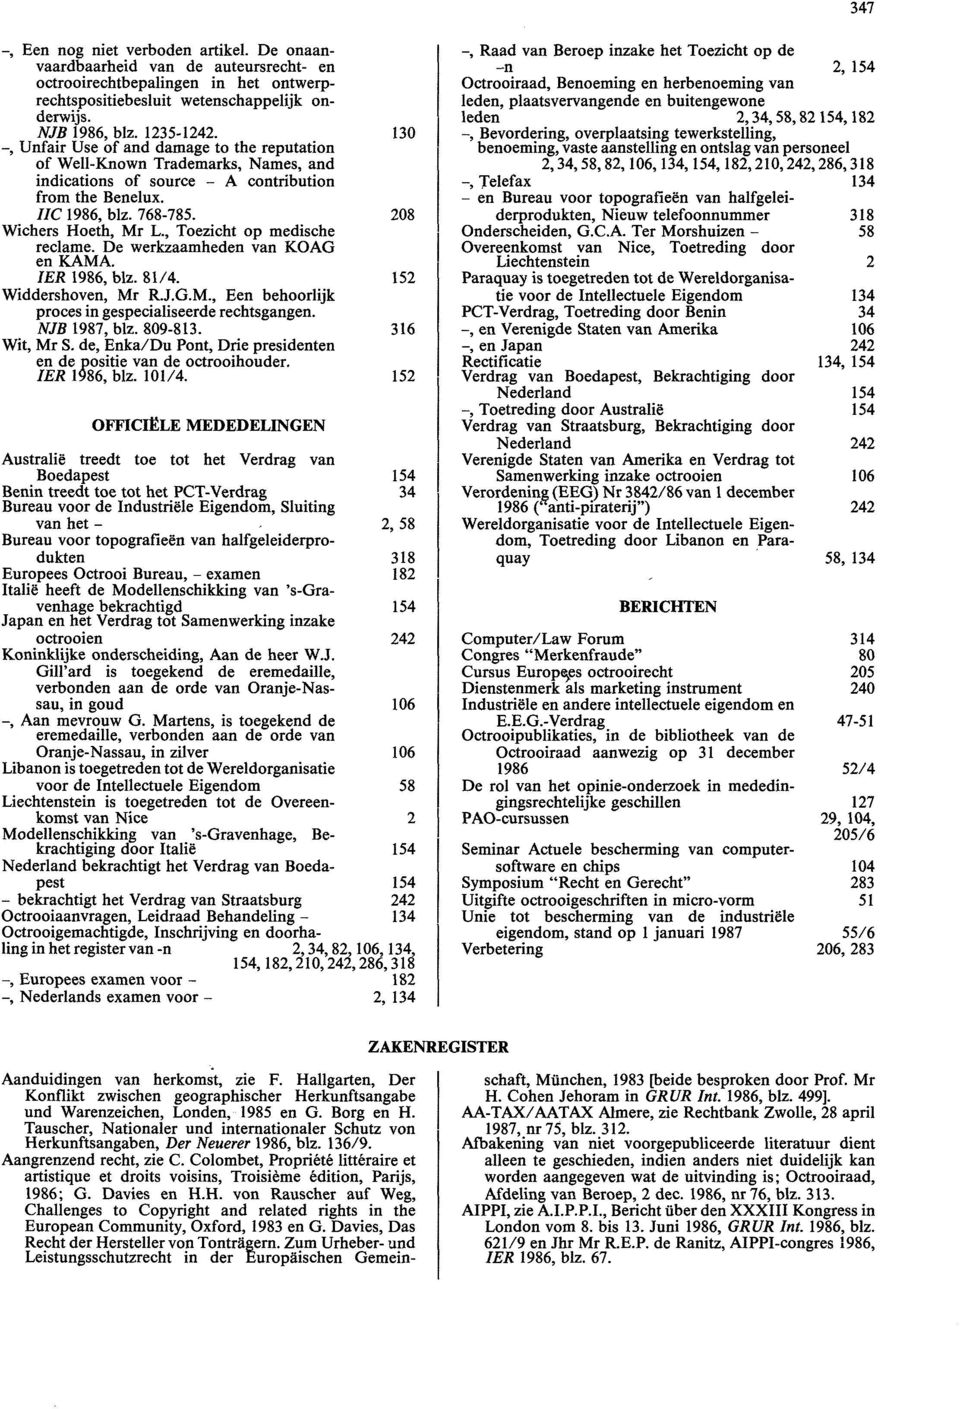 , Toezicht op medische reclame. De werkzaamheden van KOAG en KAMA. IER 1986, blz. 81/4. 152 Widdershoven, Mr R.J.G.M., Een behoorlijk proces in gespecialiseerde rechtsgangen. NJB 1987, blz. 809-813.